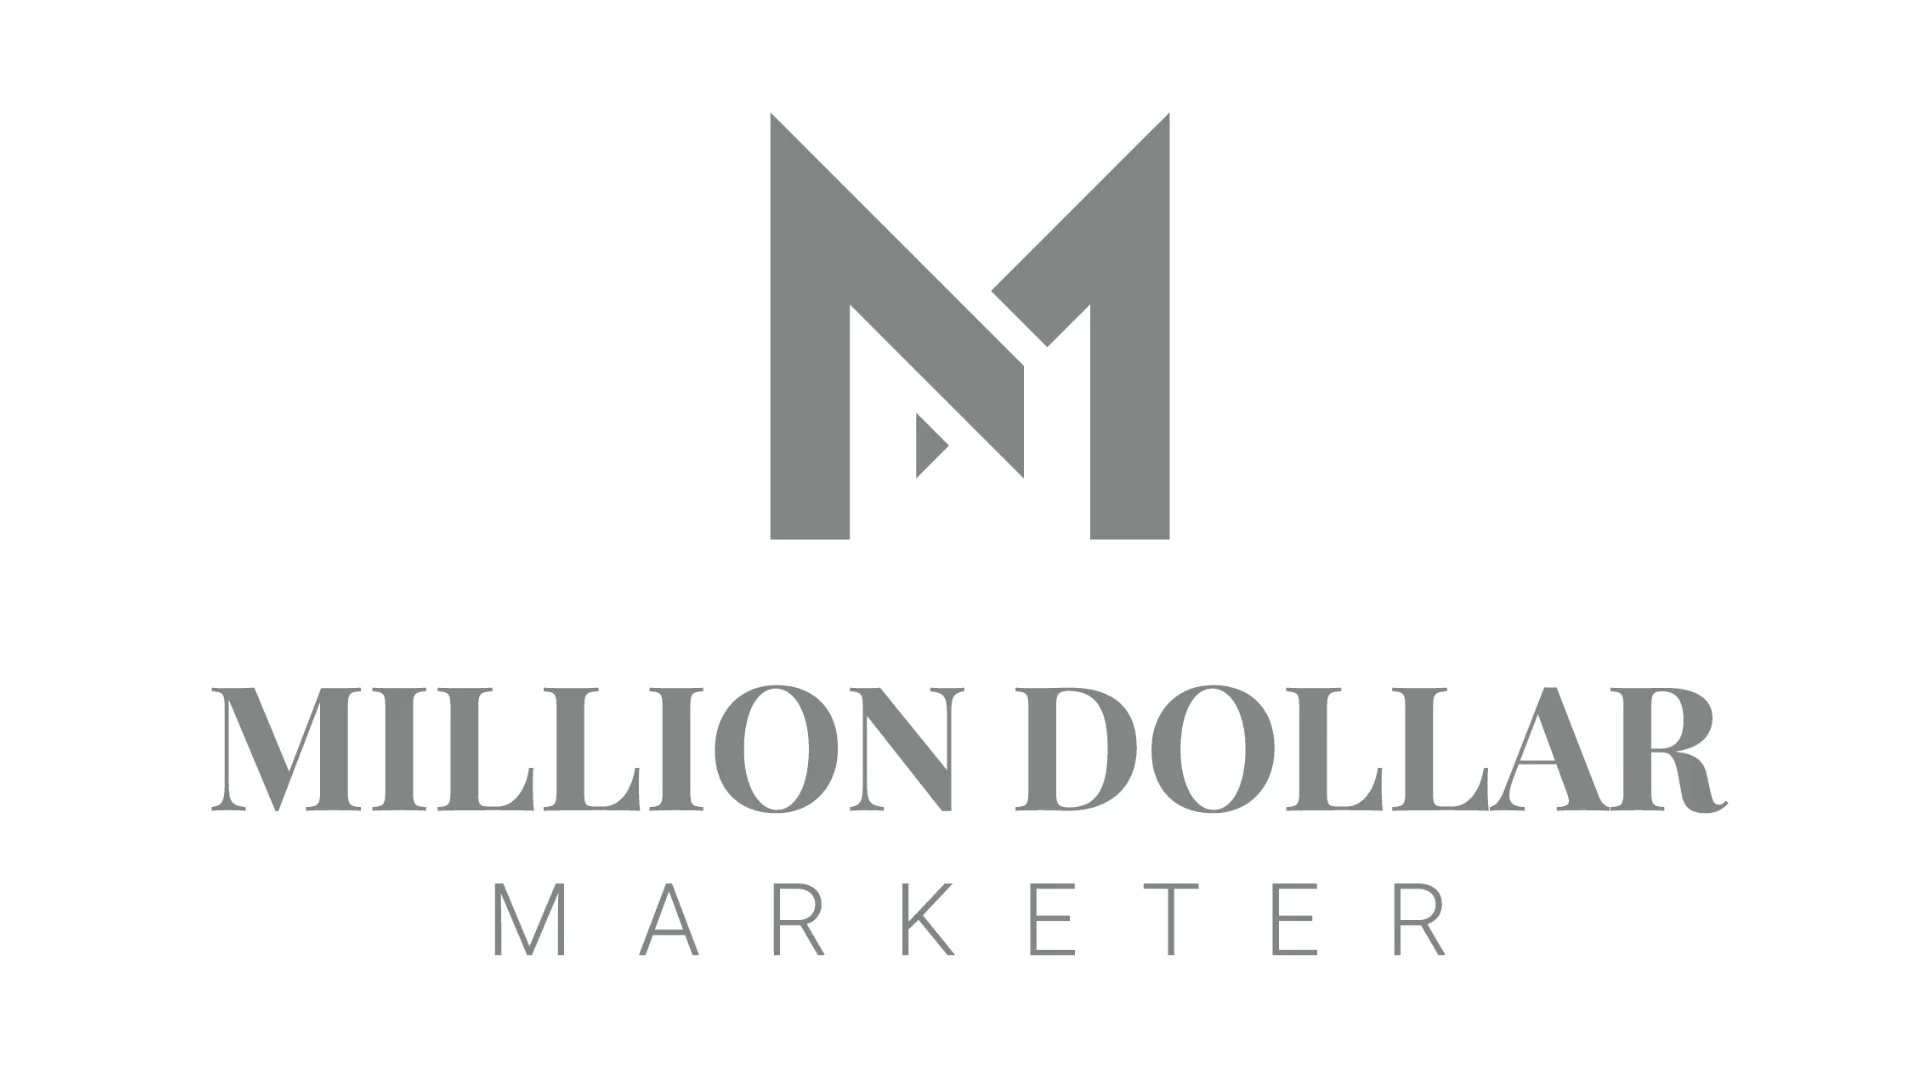 Million Dollar Marketer